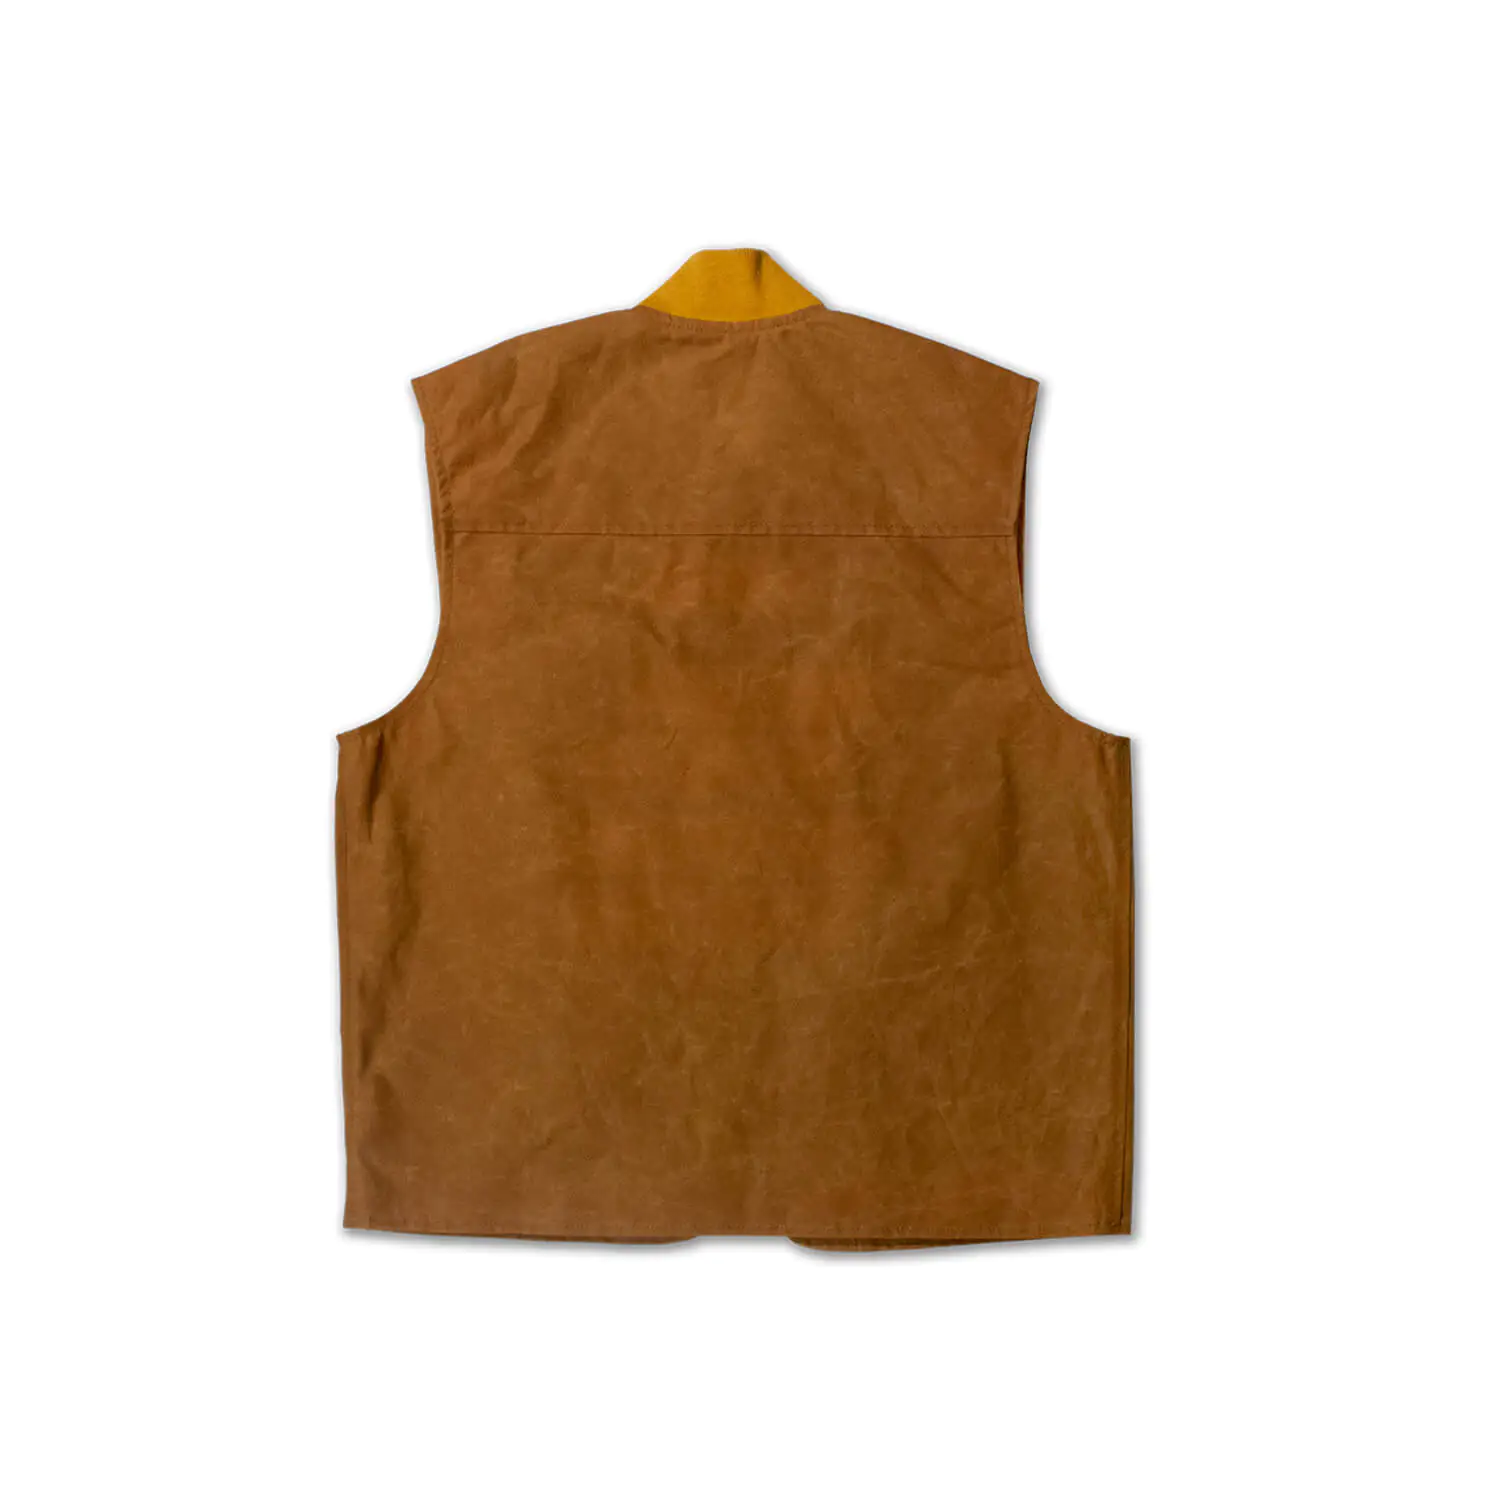 dmd.eu - CHALECO SAND DMD – Gilet sand cotton waxed – back